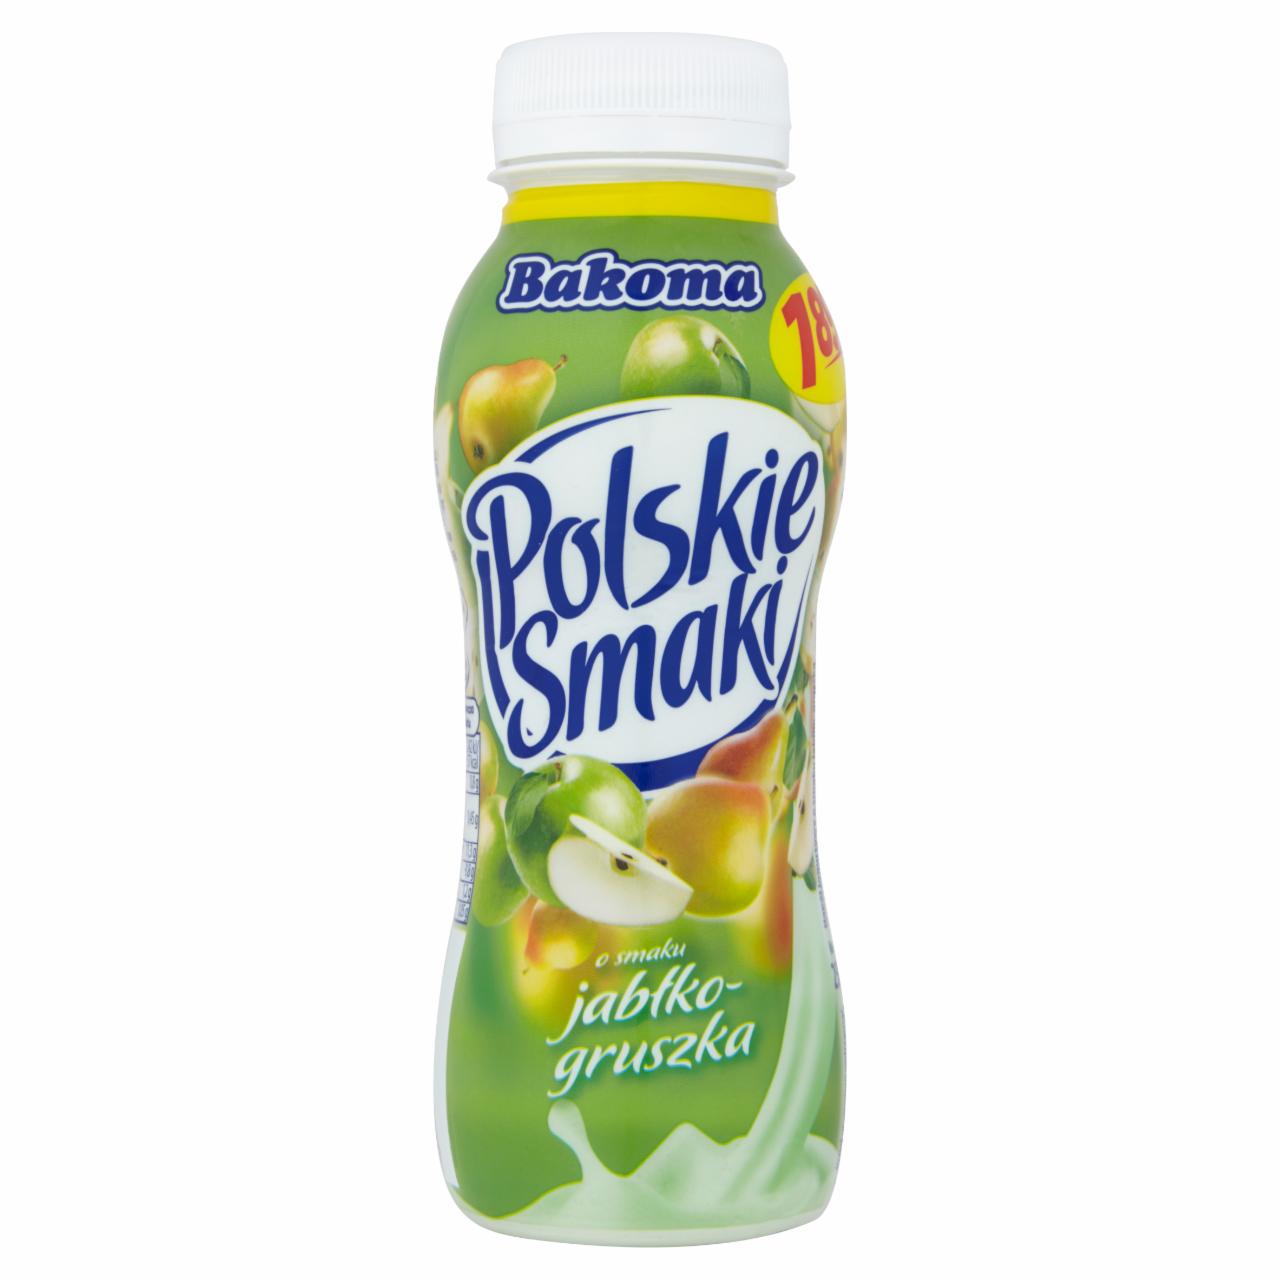 Zdjęcia - Bakoma Polskie Smaki Napój jogurtowy o smaku jabłko-gruszka 250 g